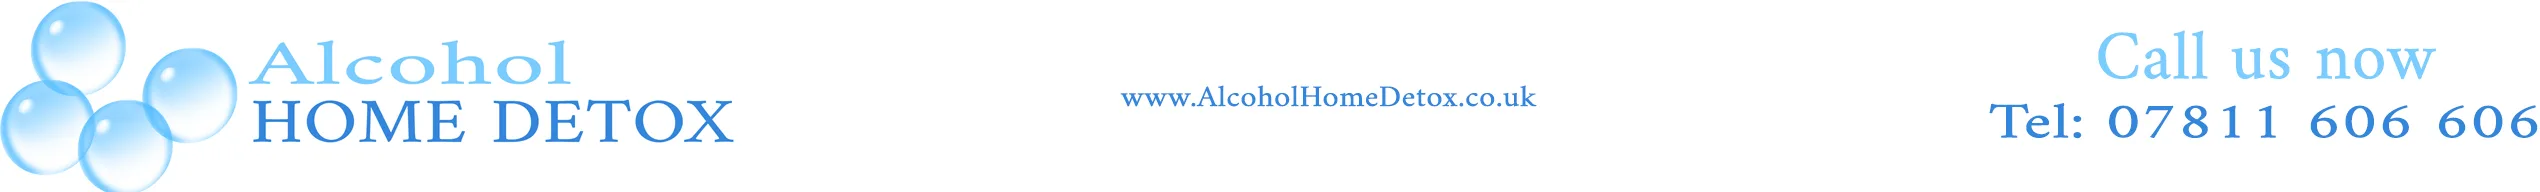 Alcohol Home Detox